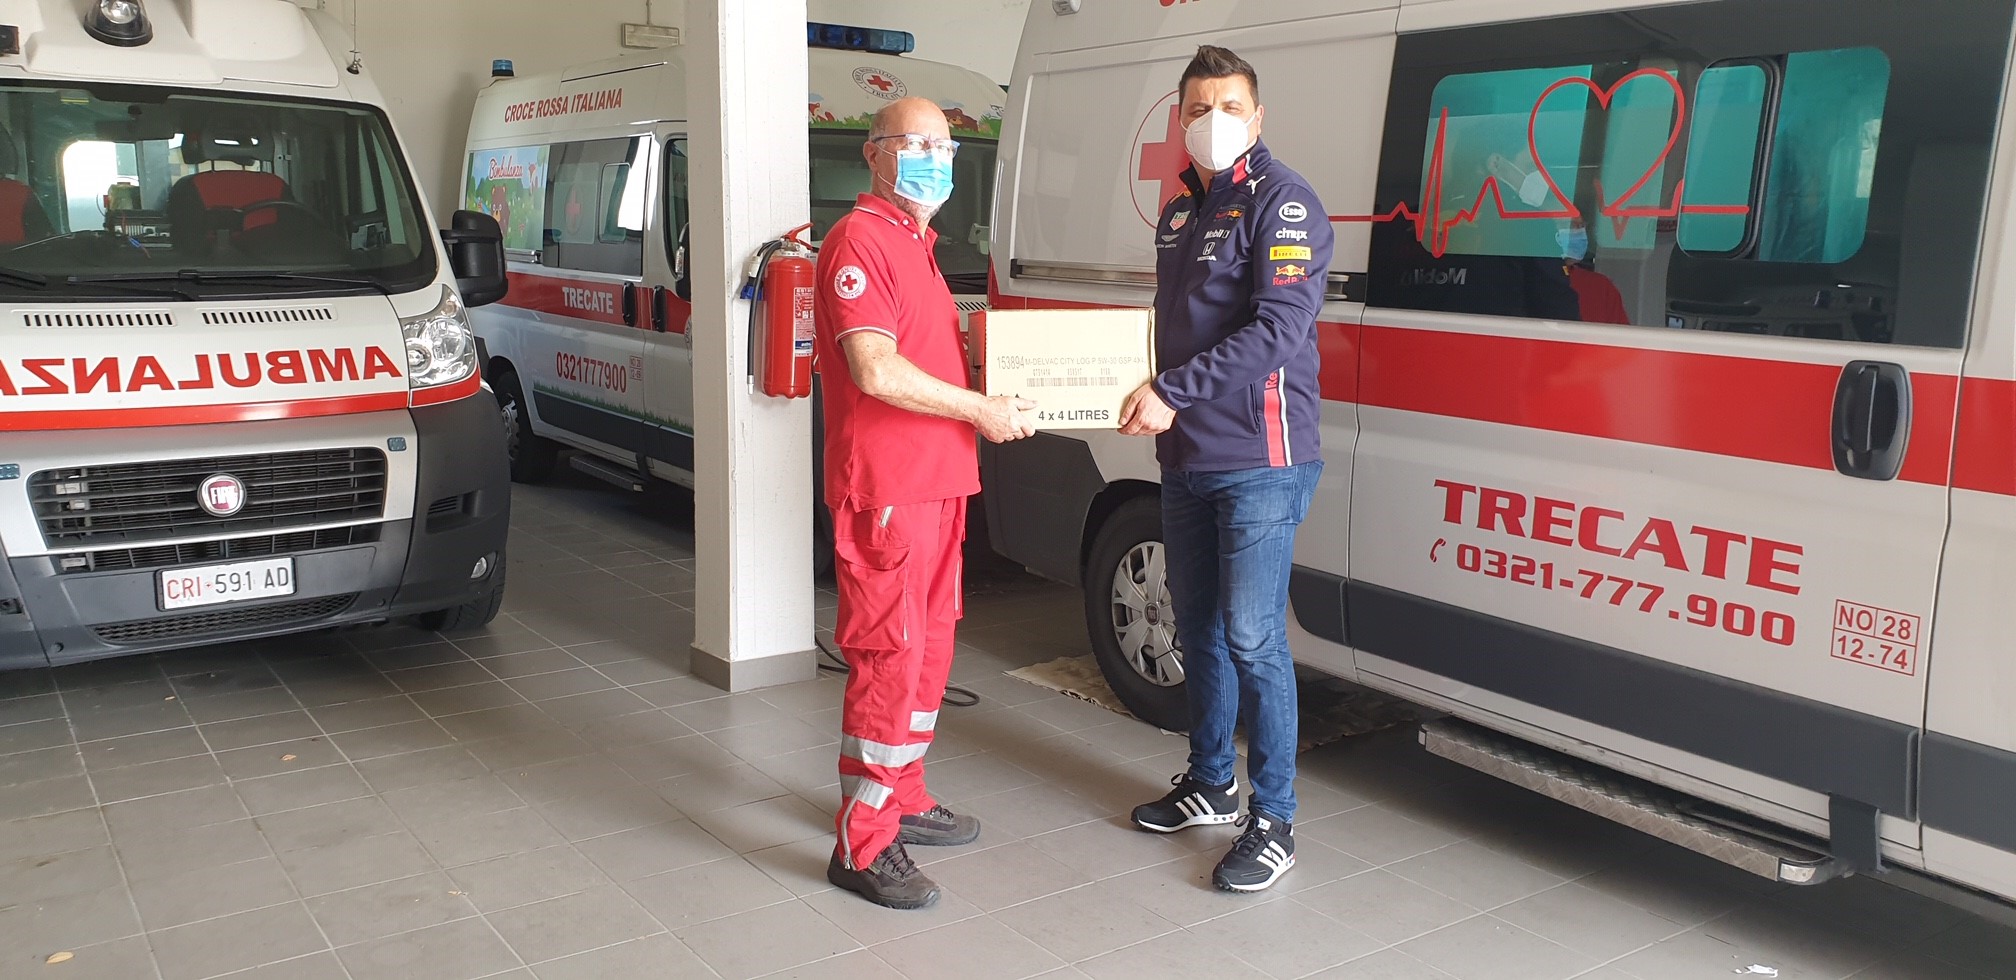 Prossima tappa è il Comitato della Croce Rossa di Trecate che riceve i lubrificanti Mobil DelvacTM per la manutenzione dei suoi mezzi di soccorso